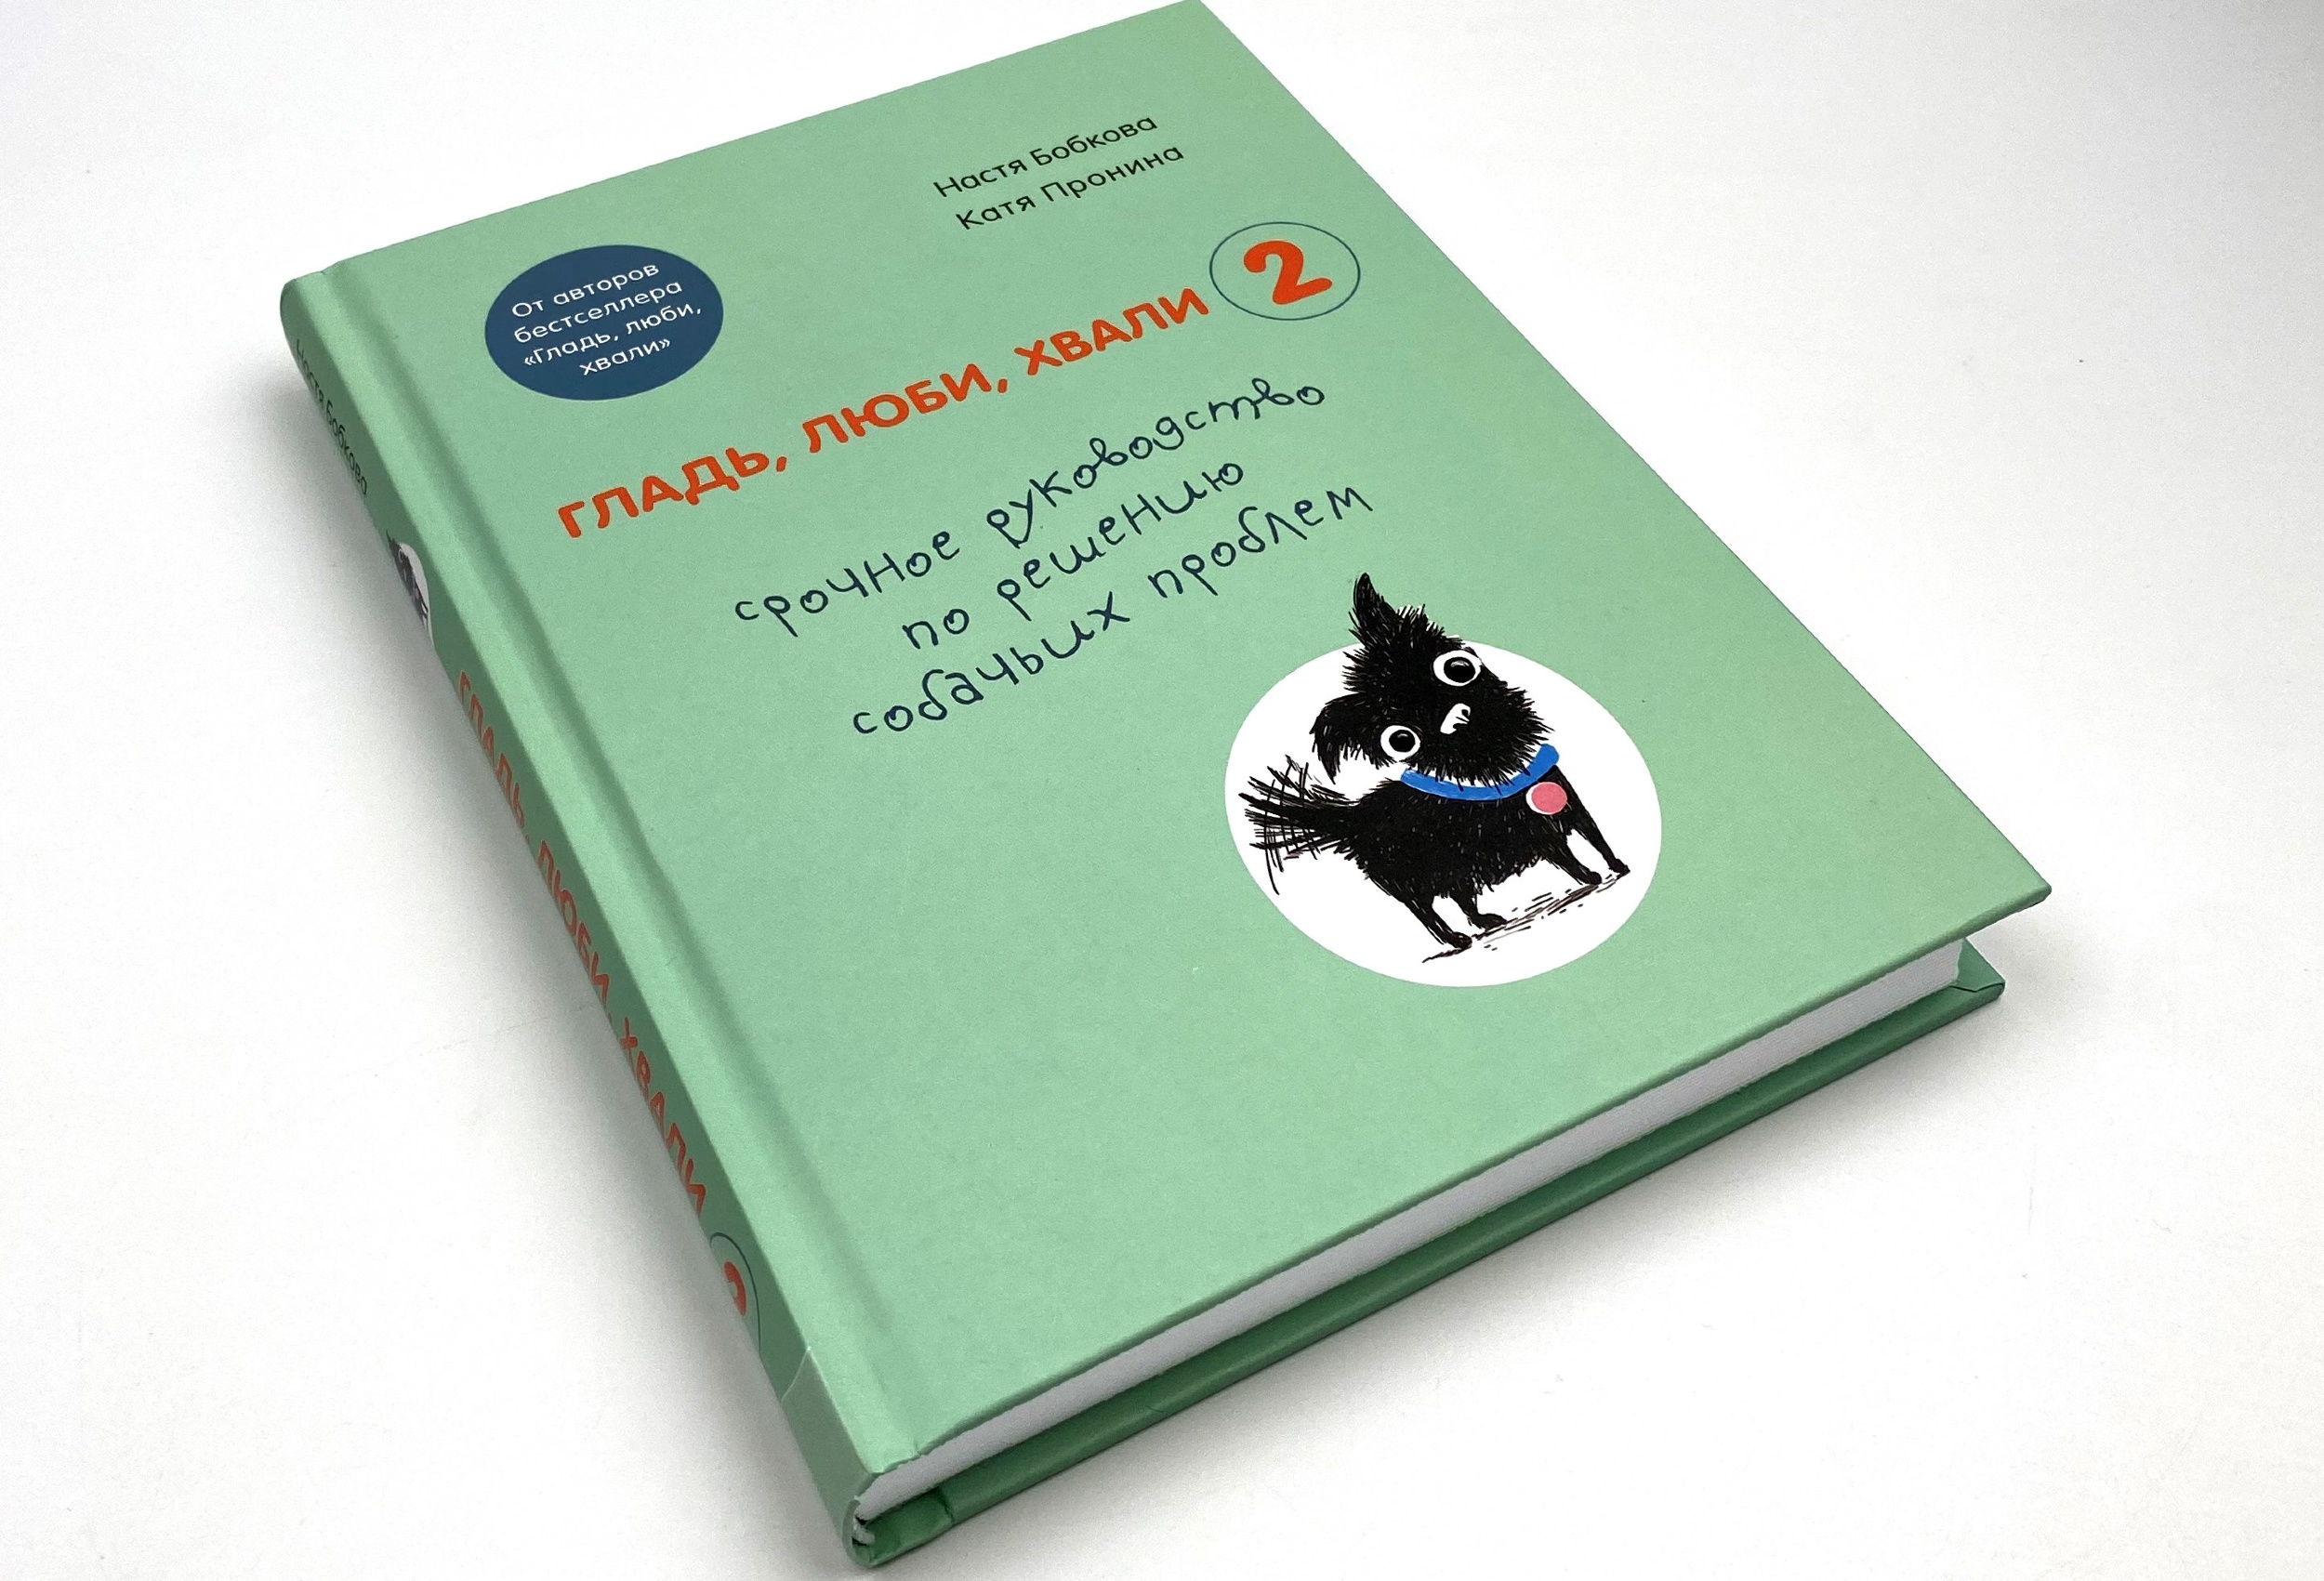 Гладь, люби, хвали 2. Срочное руководство по решению собачьих проблем. Автор — Анастасия Бобкова, Катя Пронина. 